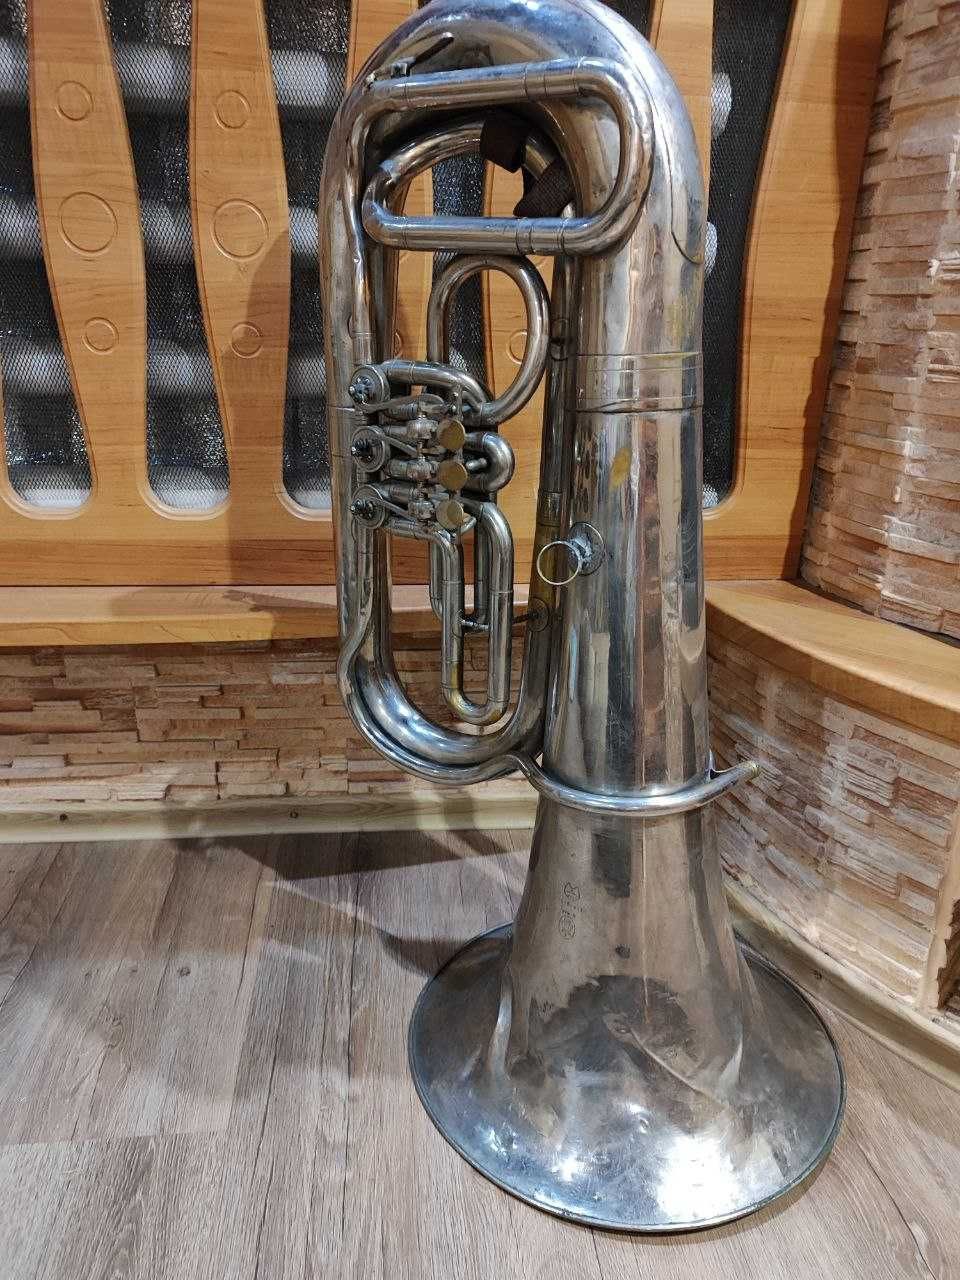 музыкальная труба, тромбон, туба старинный музыкальный инструмент